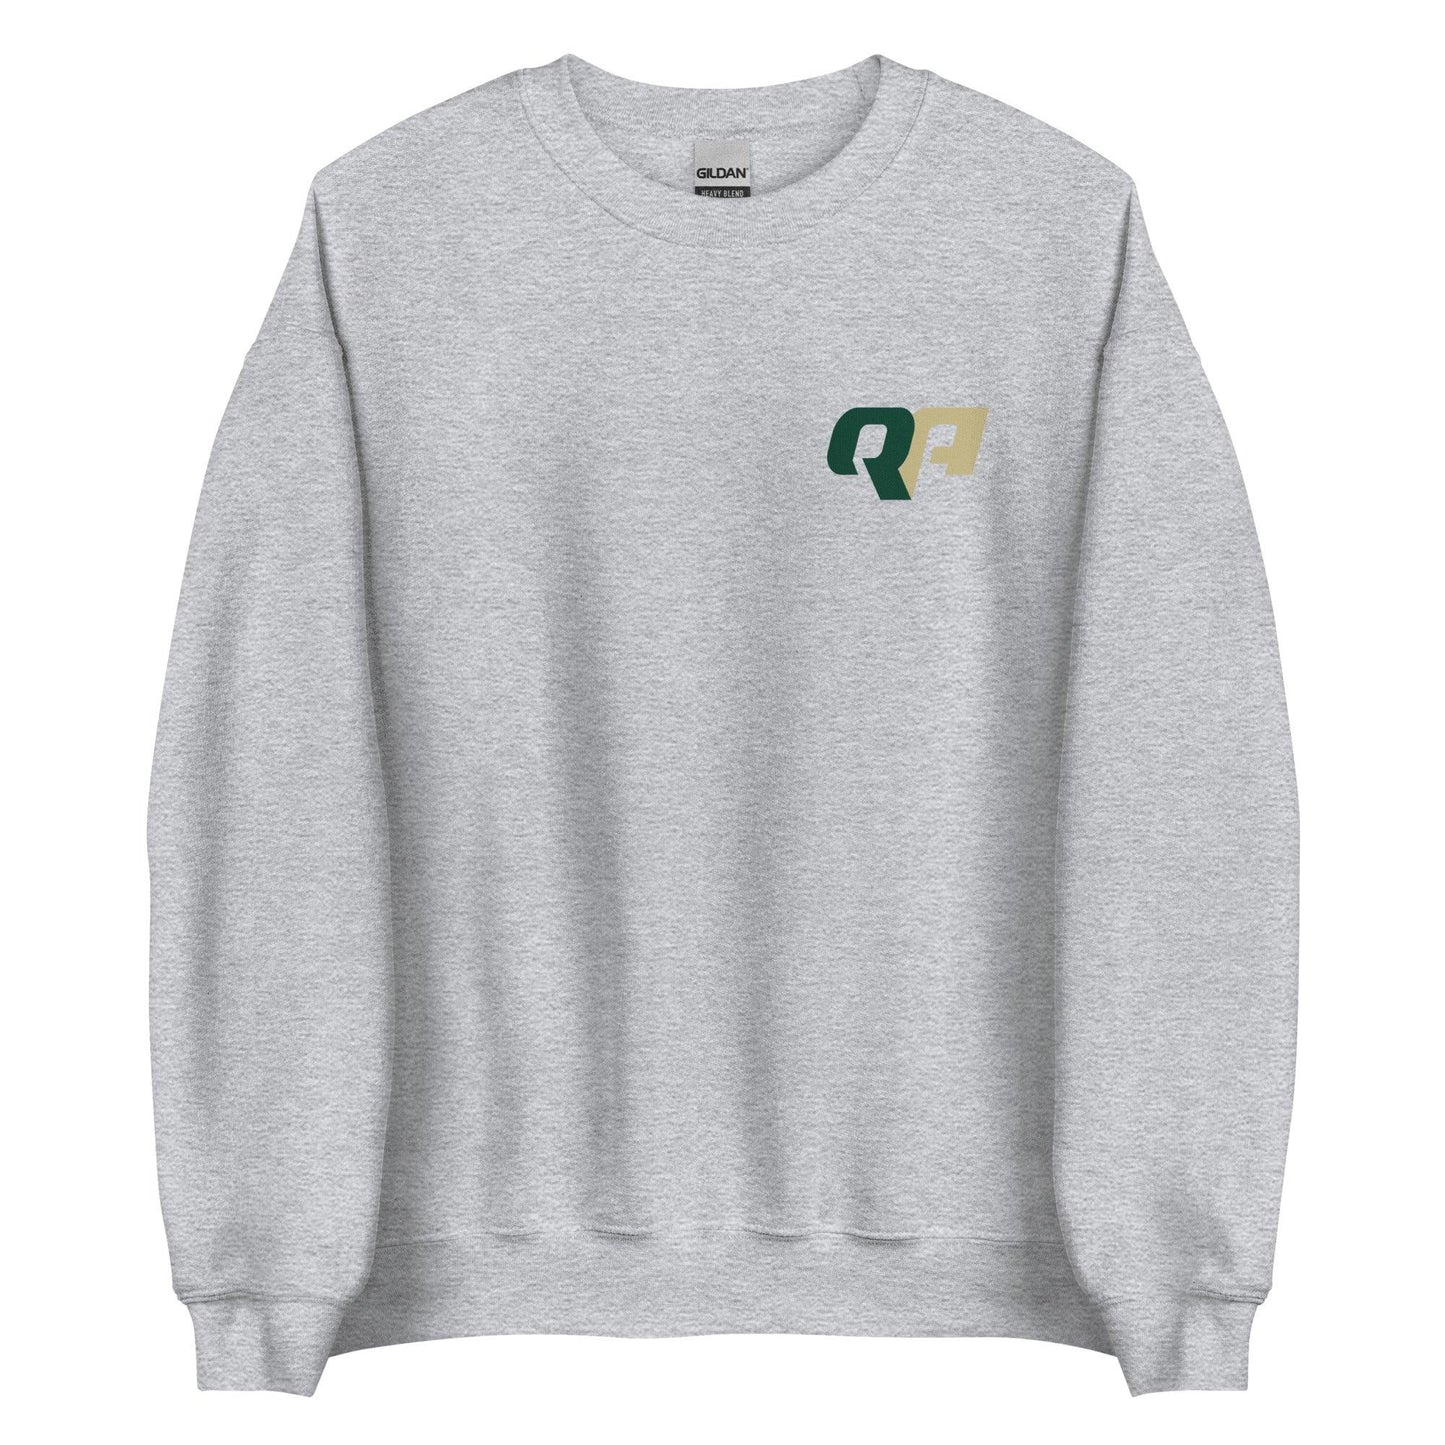 Quadry Adams "Essential" Sweatshirt - Fan Arch